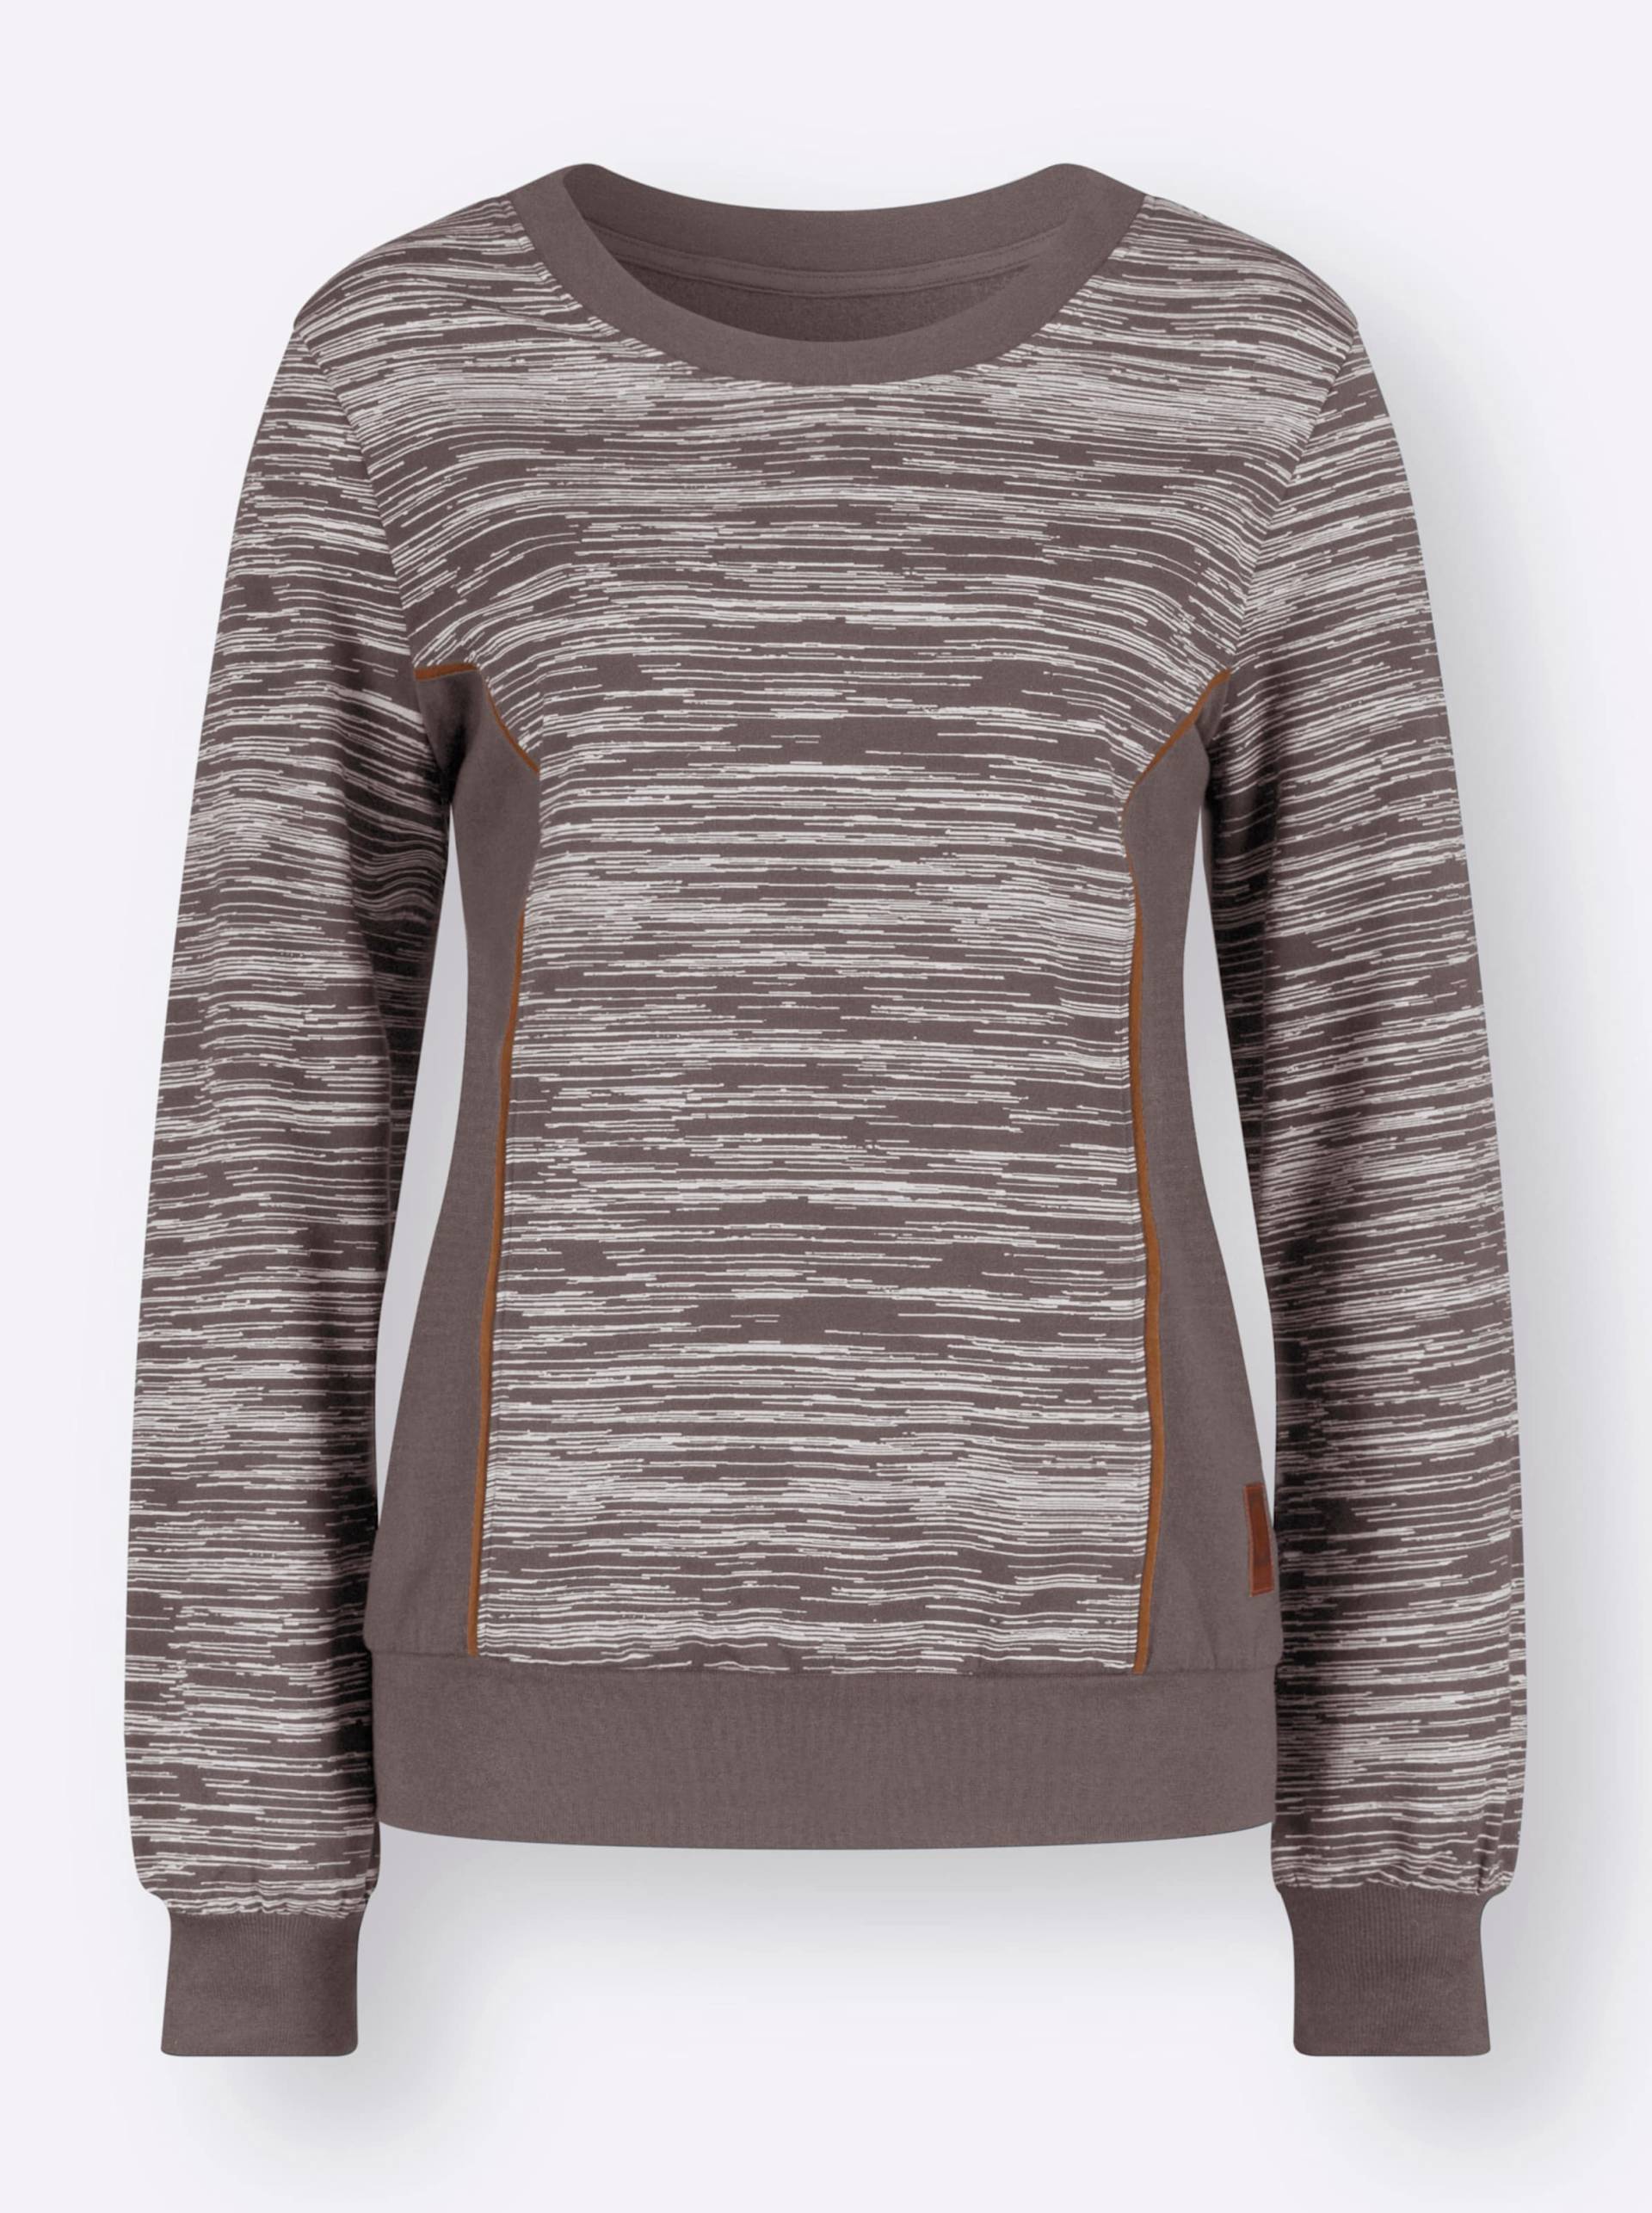 Sweatshirt in dunkeltaupe-ecru-bedruckt von heine von heine